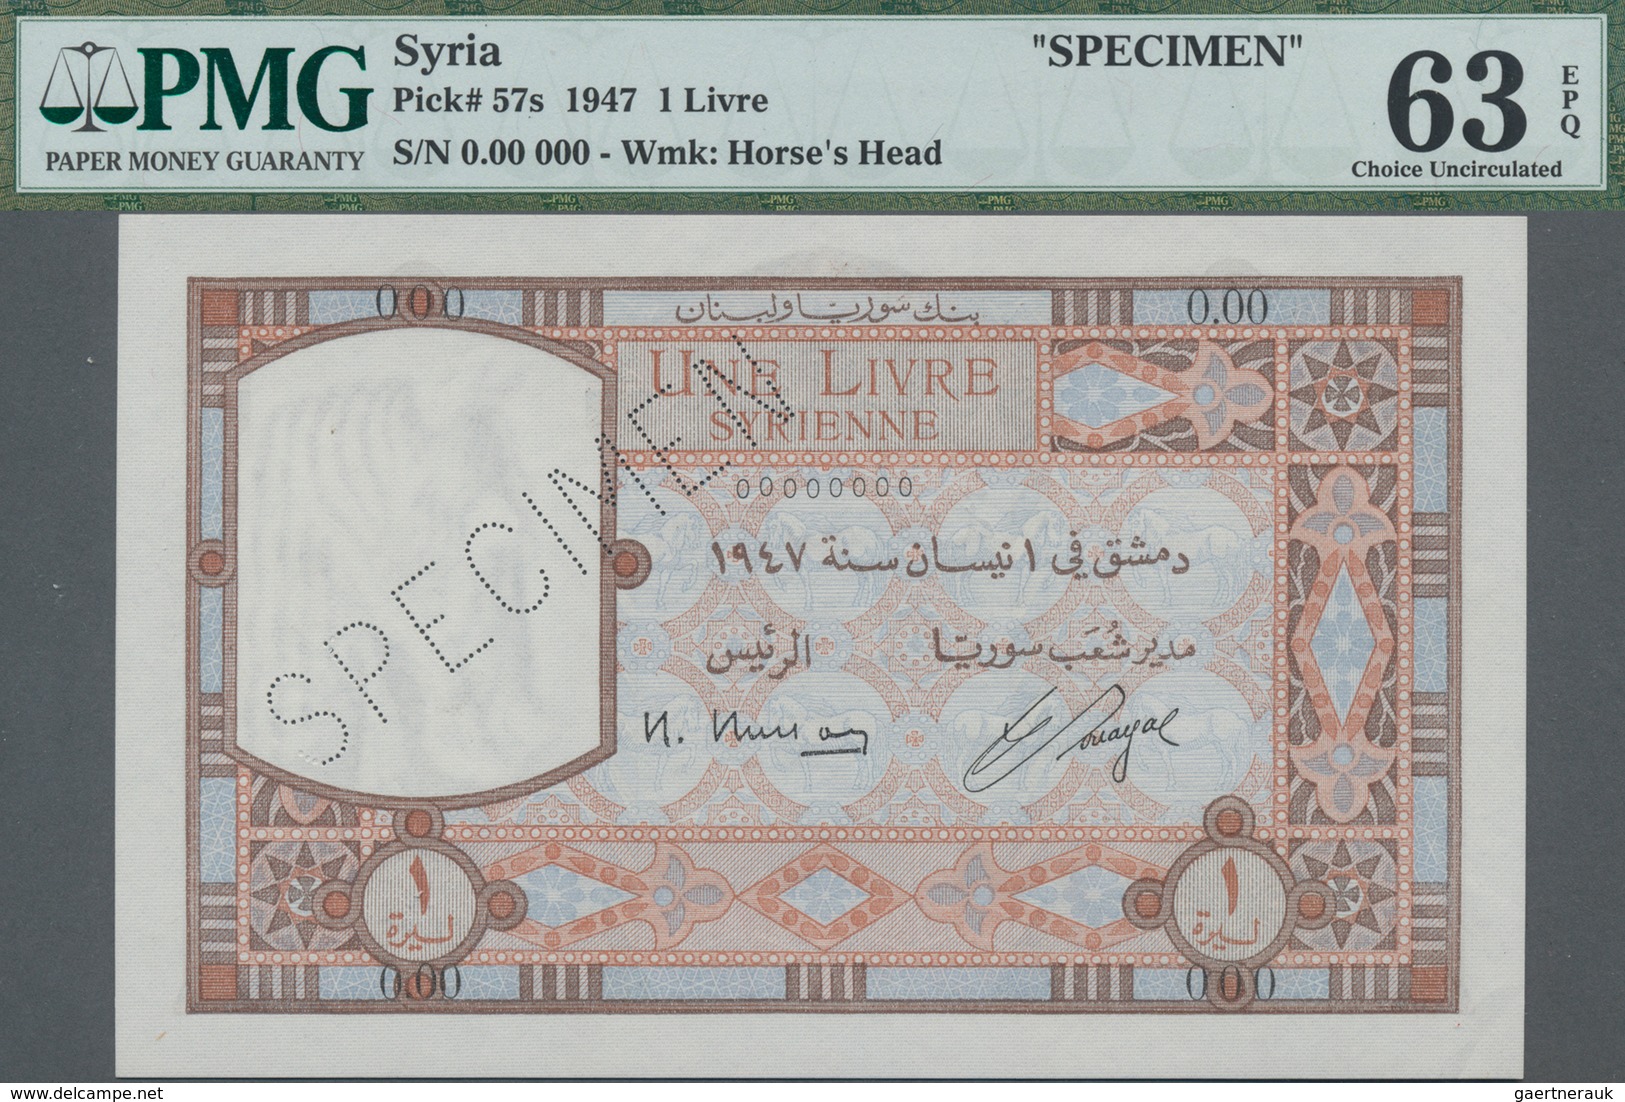 Syria / Syrien: Banque De Syrie Et Du Liban 1 Livre 1947 SPECIMEN, P.57s With Perforation "Specimen" - Syria